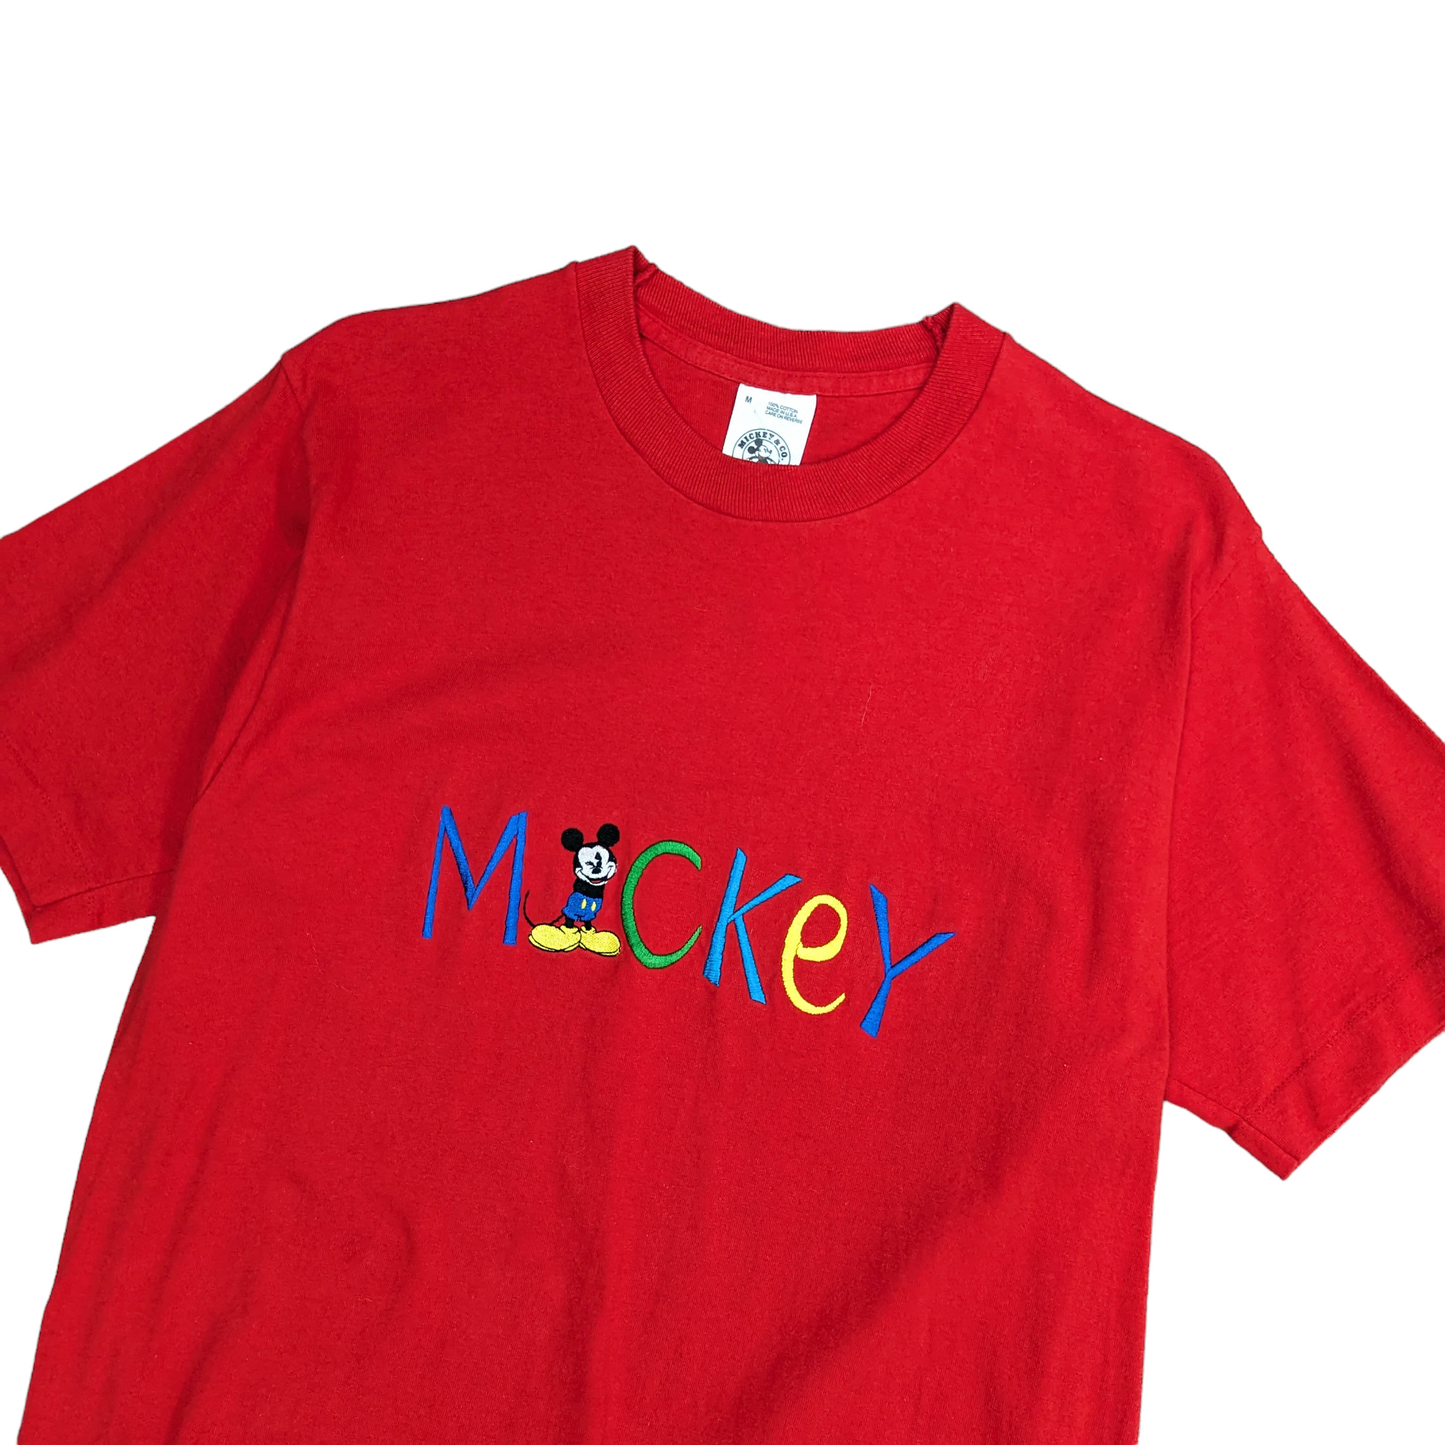 Mickey & Co Single Stitch T-Shirt Size M